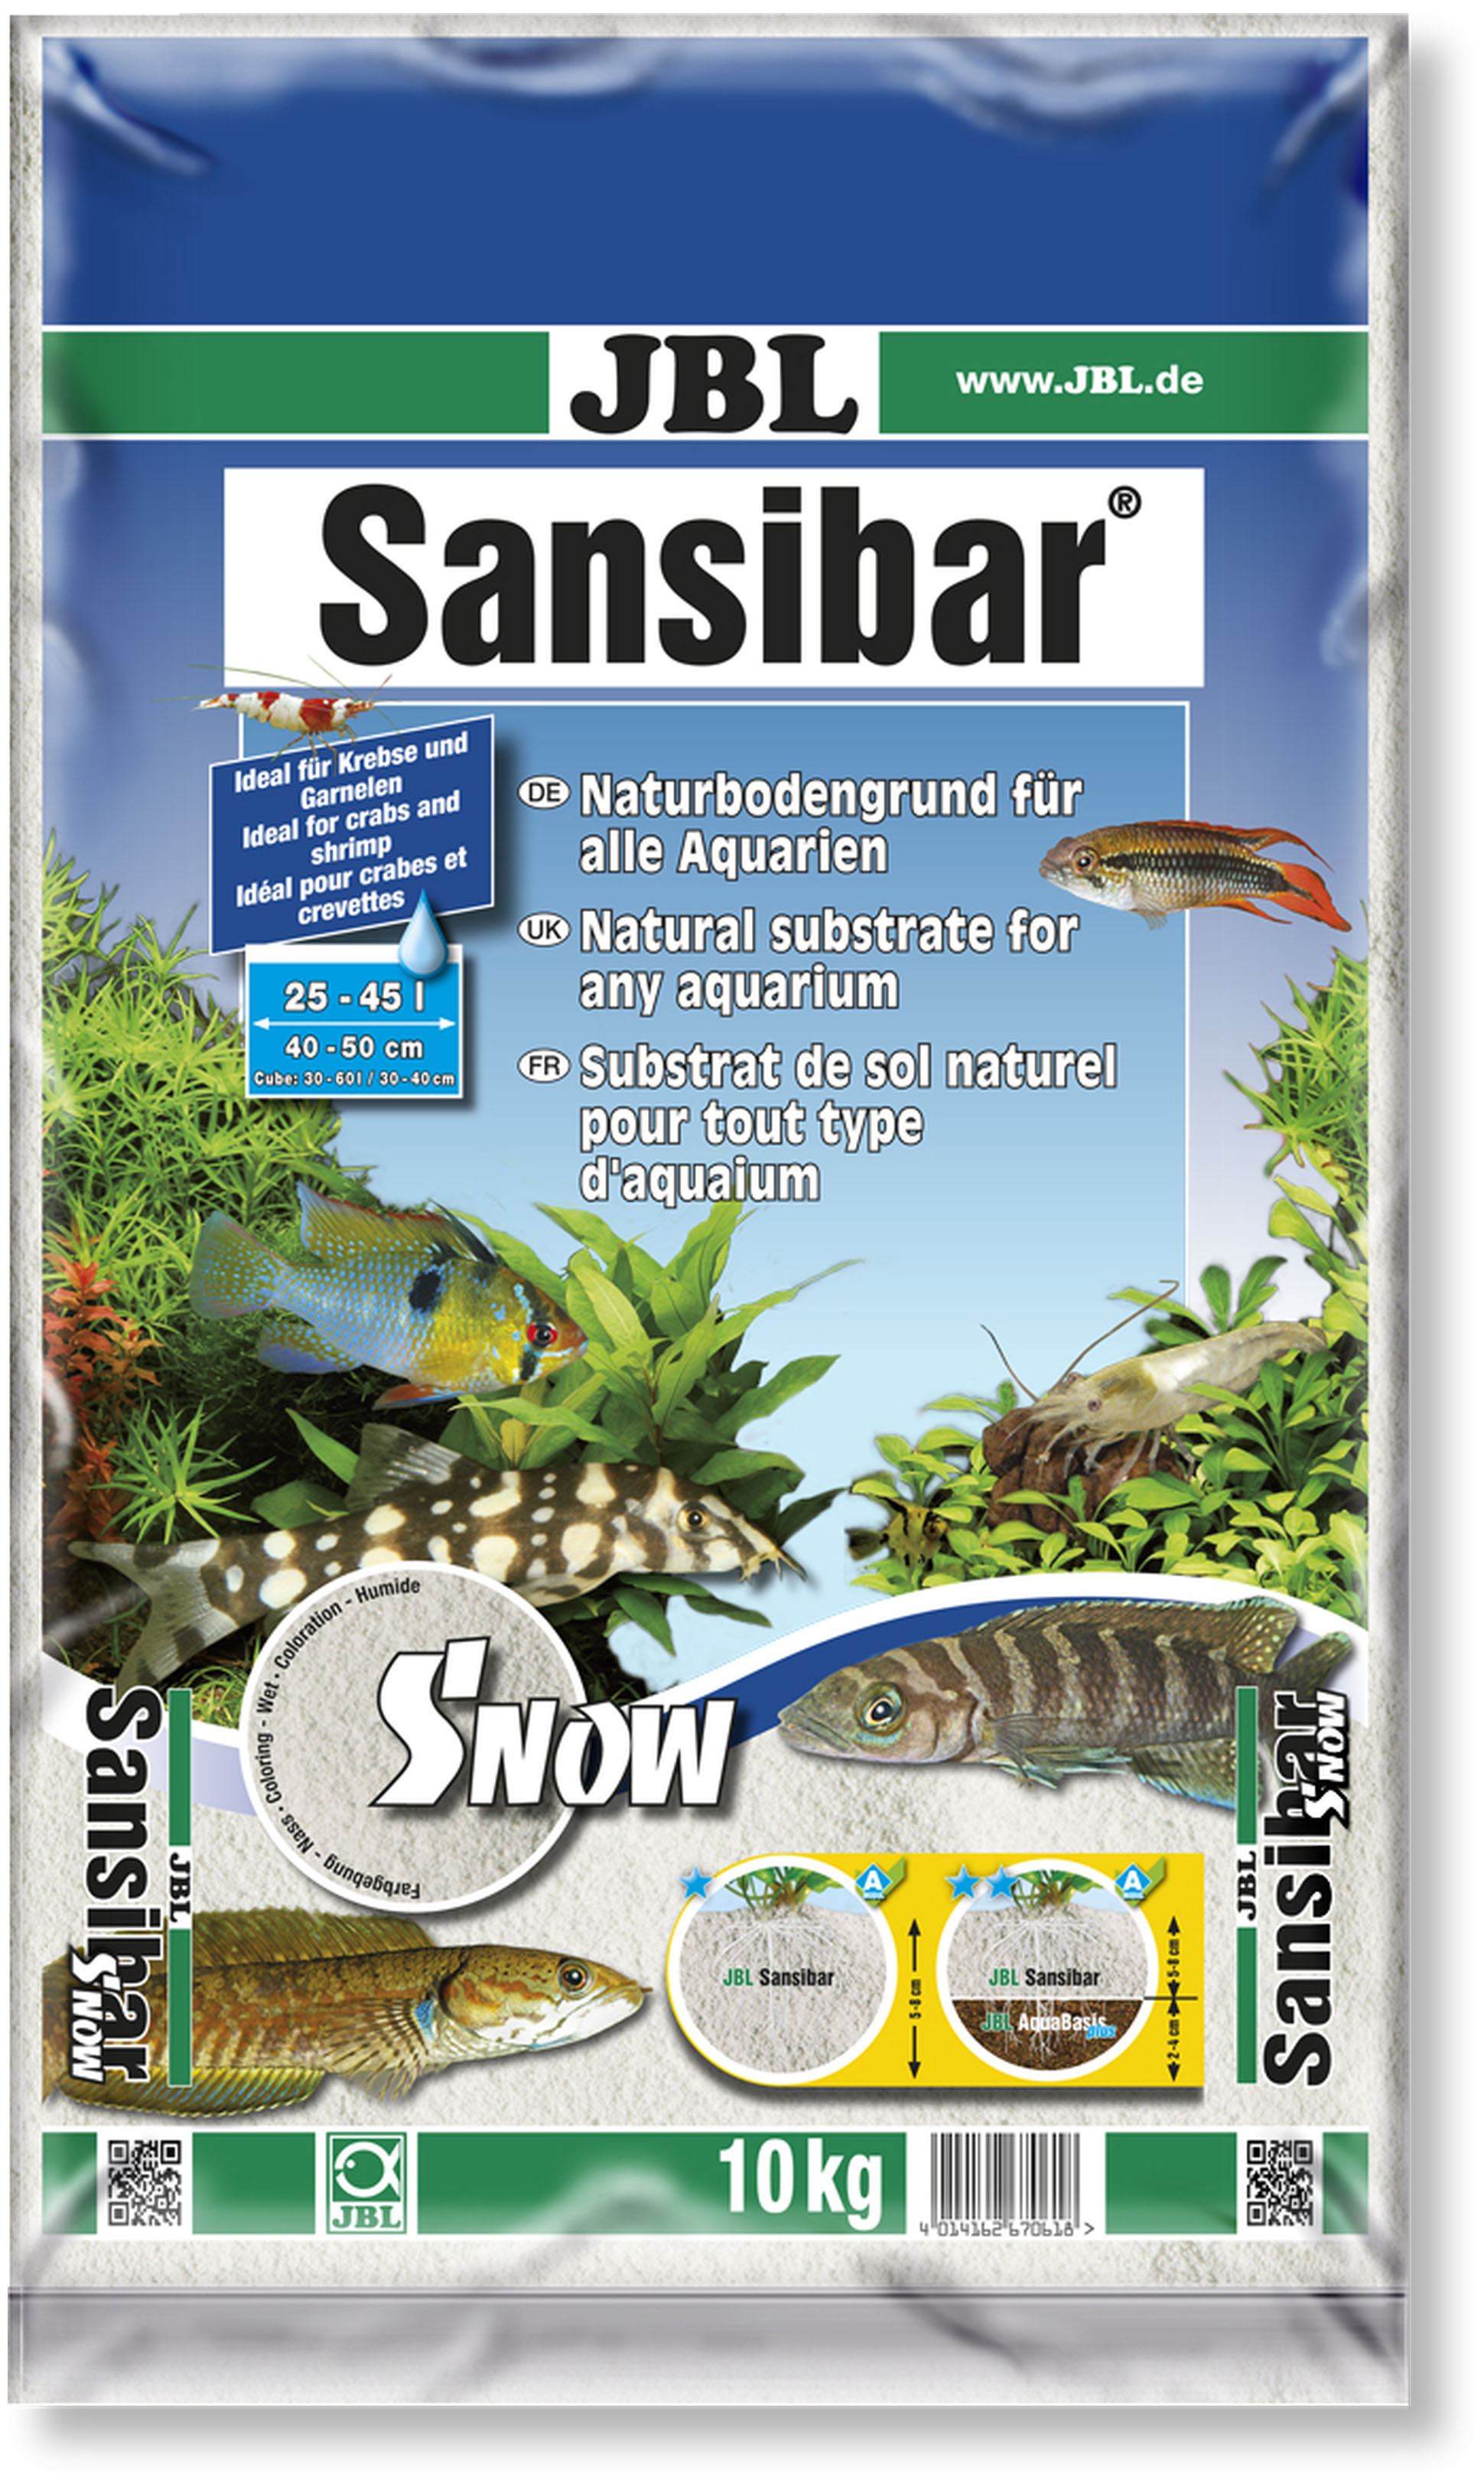 JBL Sansibar SNOW Kg RecifAtHome